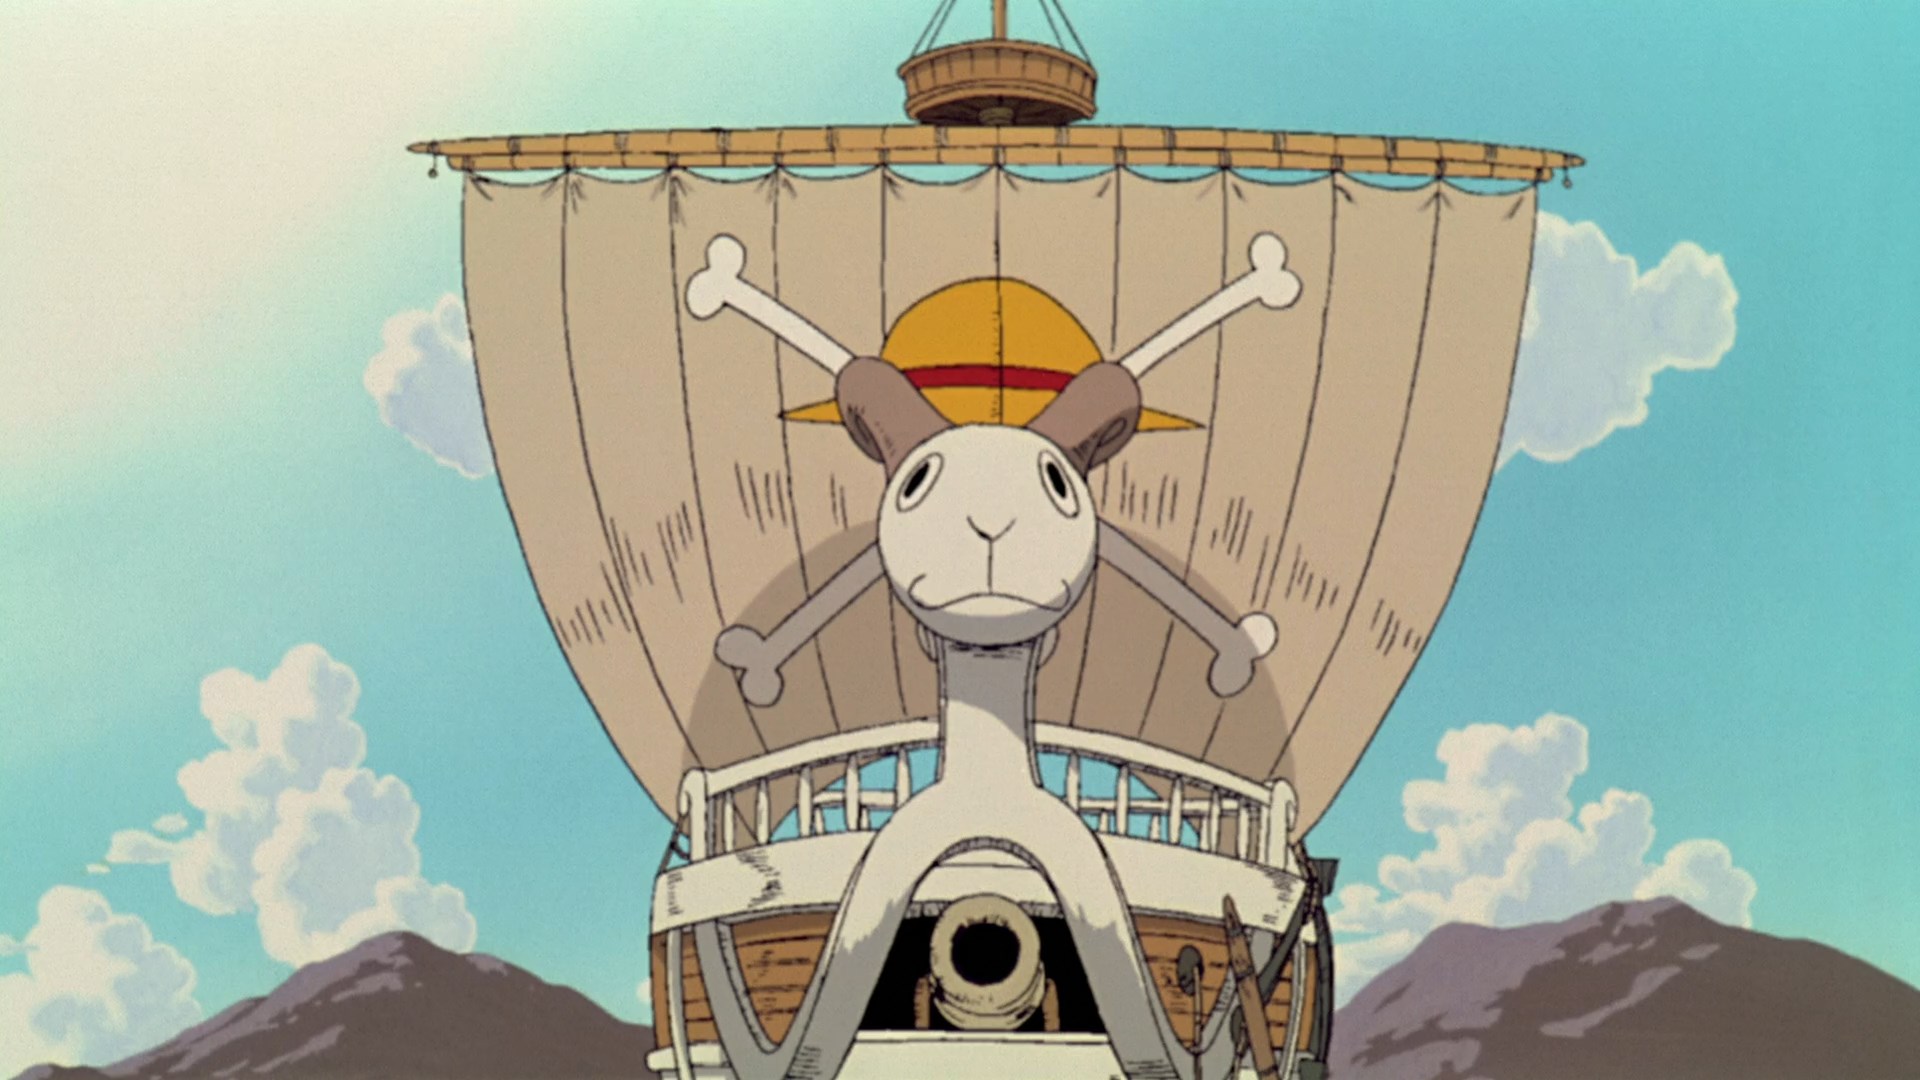 OtakeiraCast - Ep.102 - One Piece - Finalmente o anime do pirata